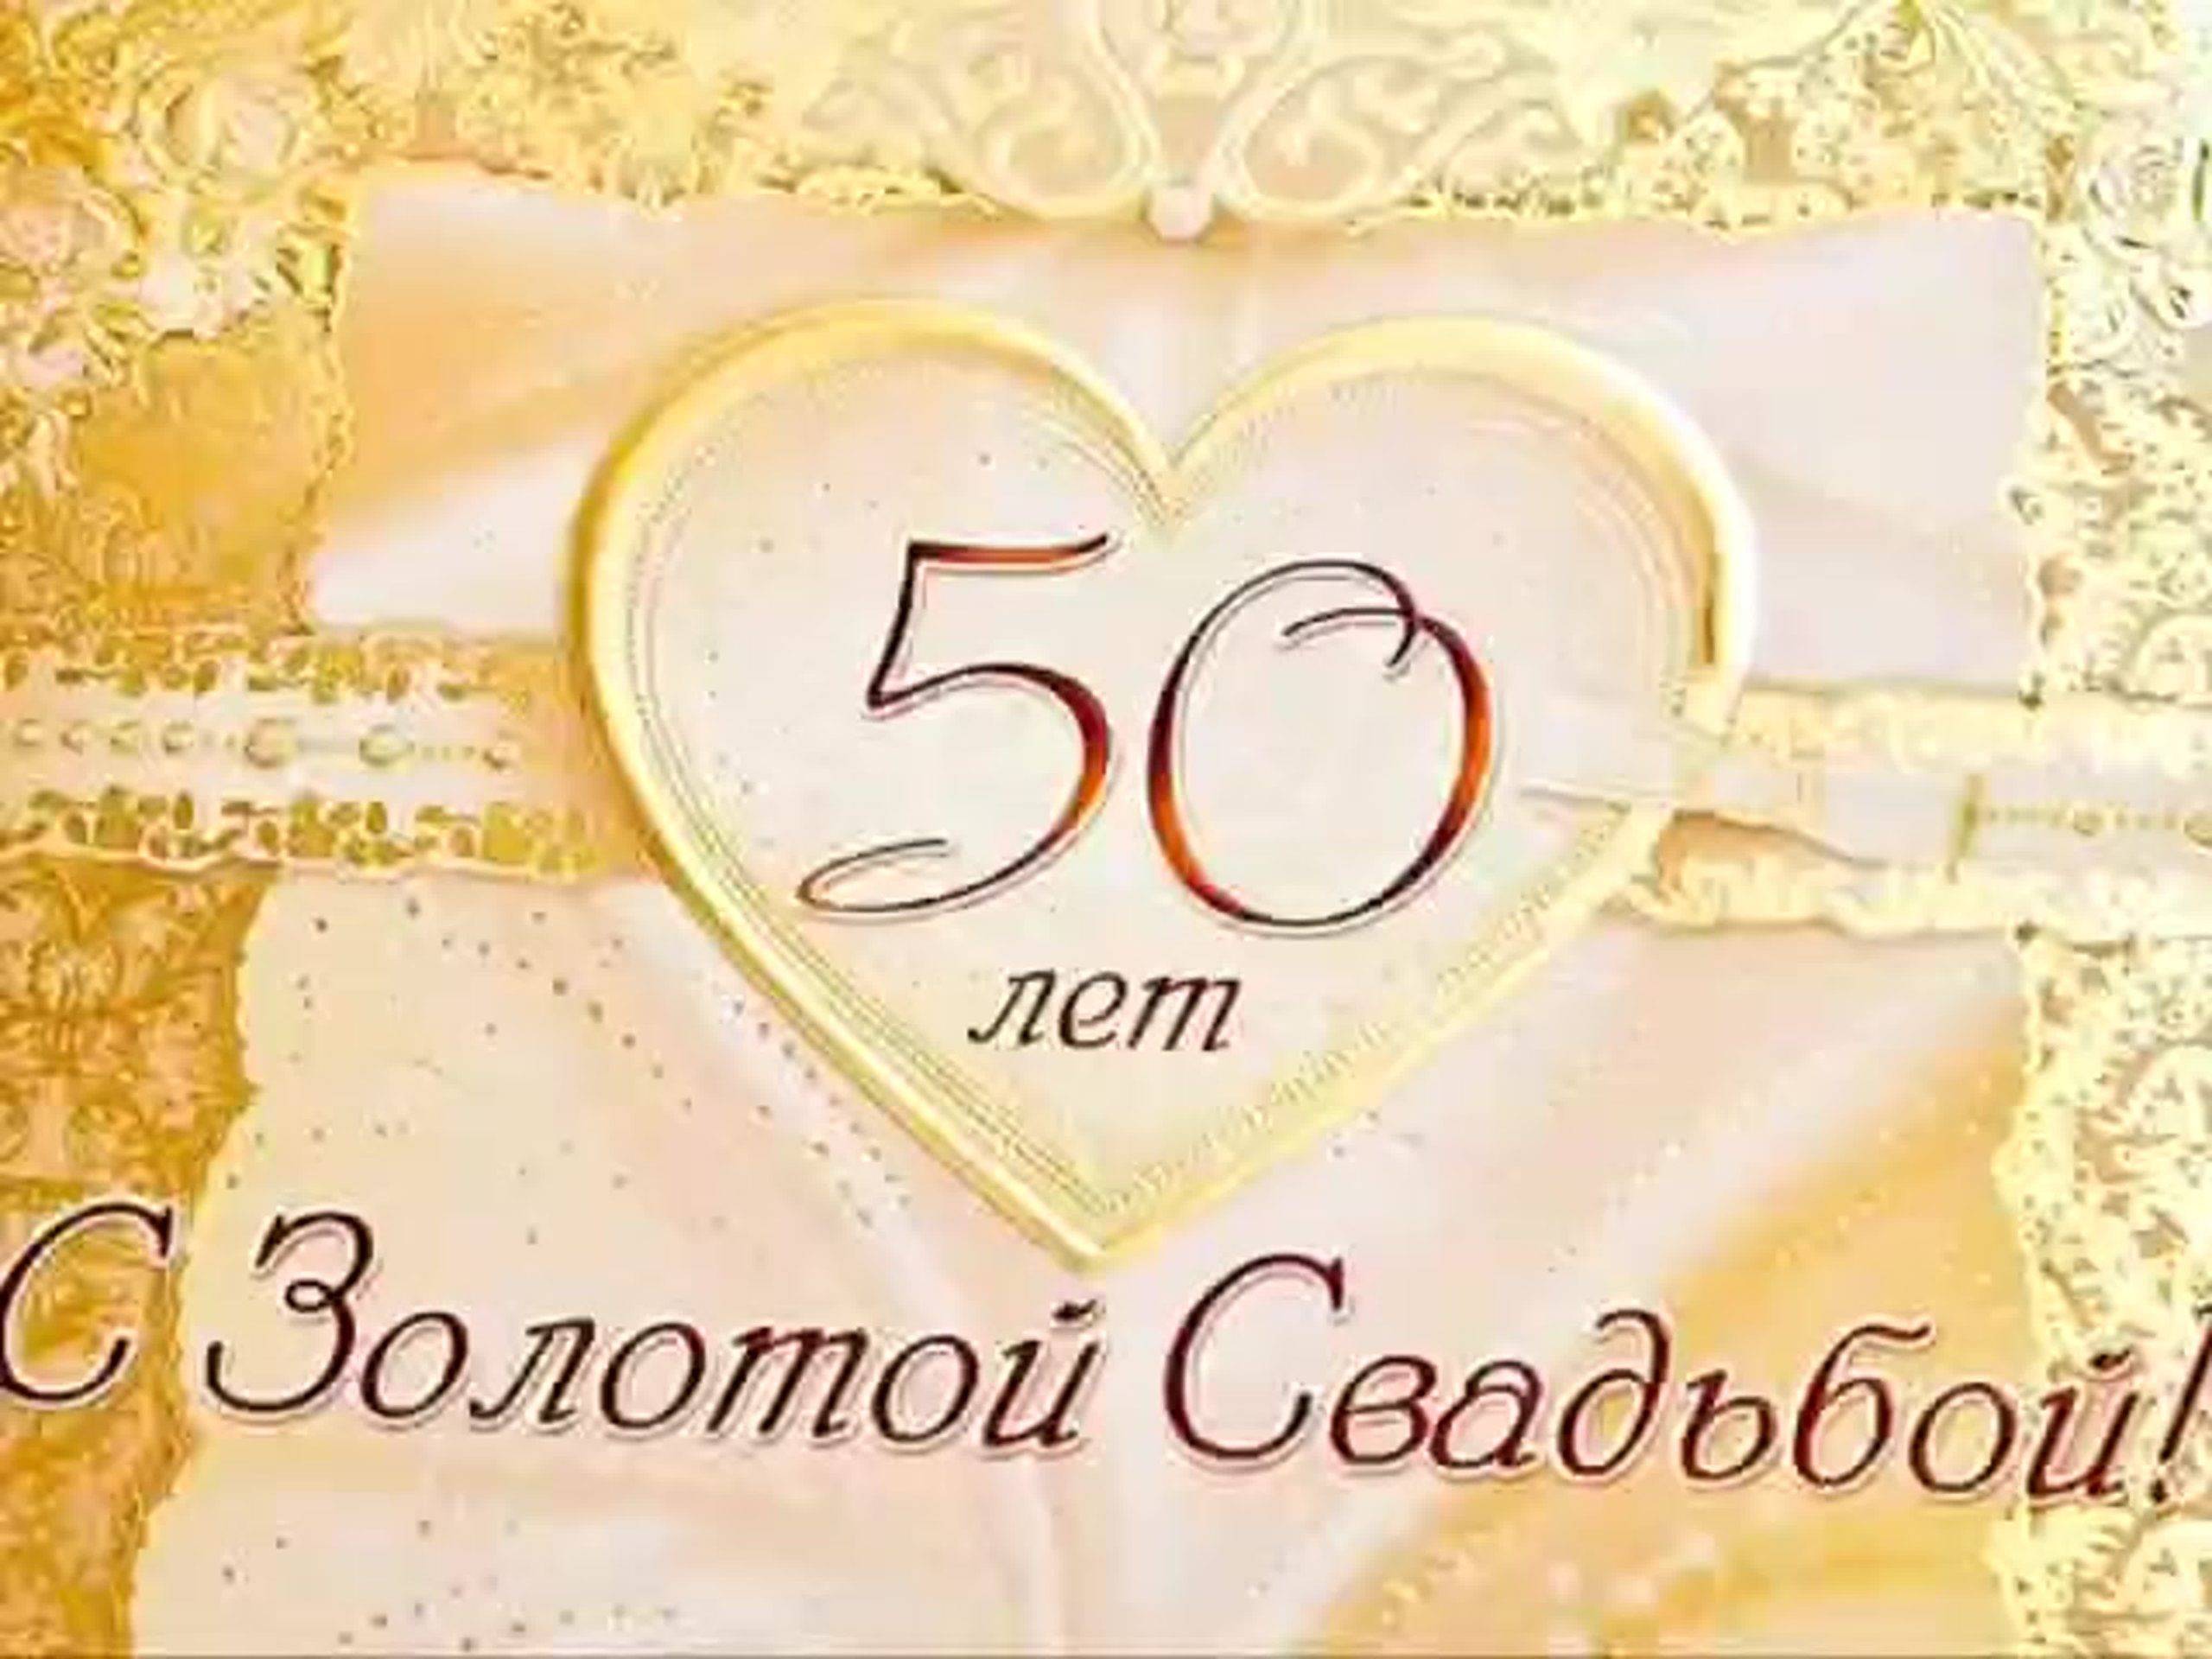 50 лет свадьбы - золотая 👰 что дарить на 50 годовщину совместной жизни